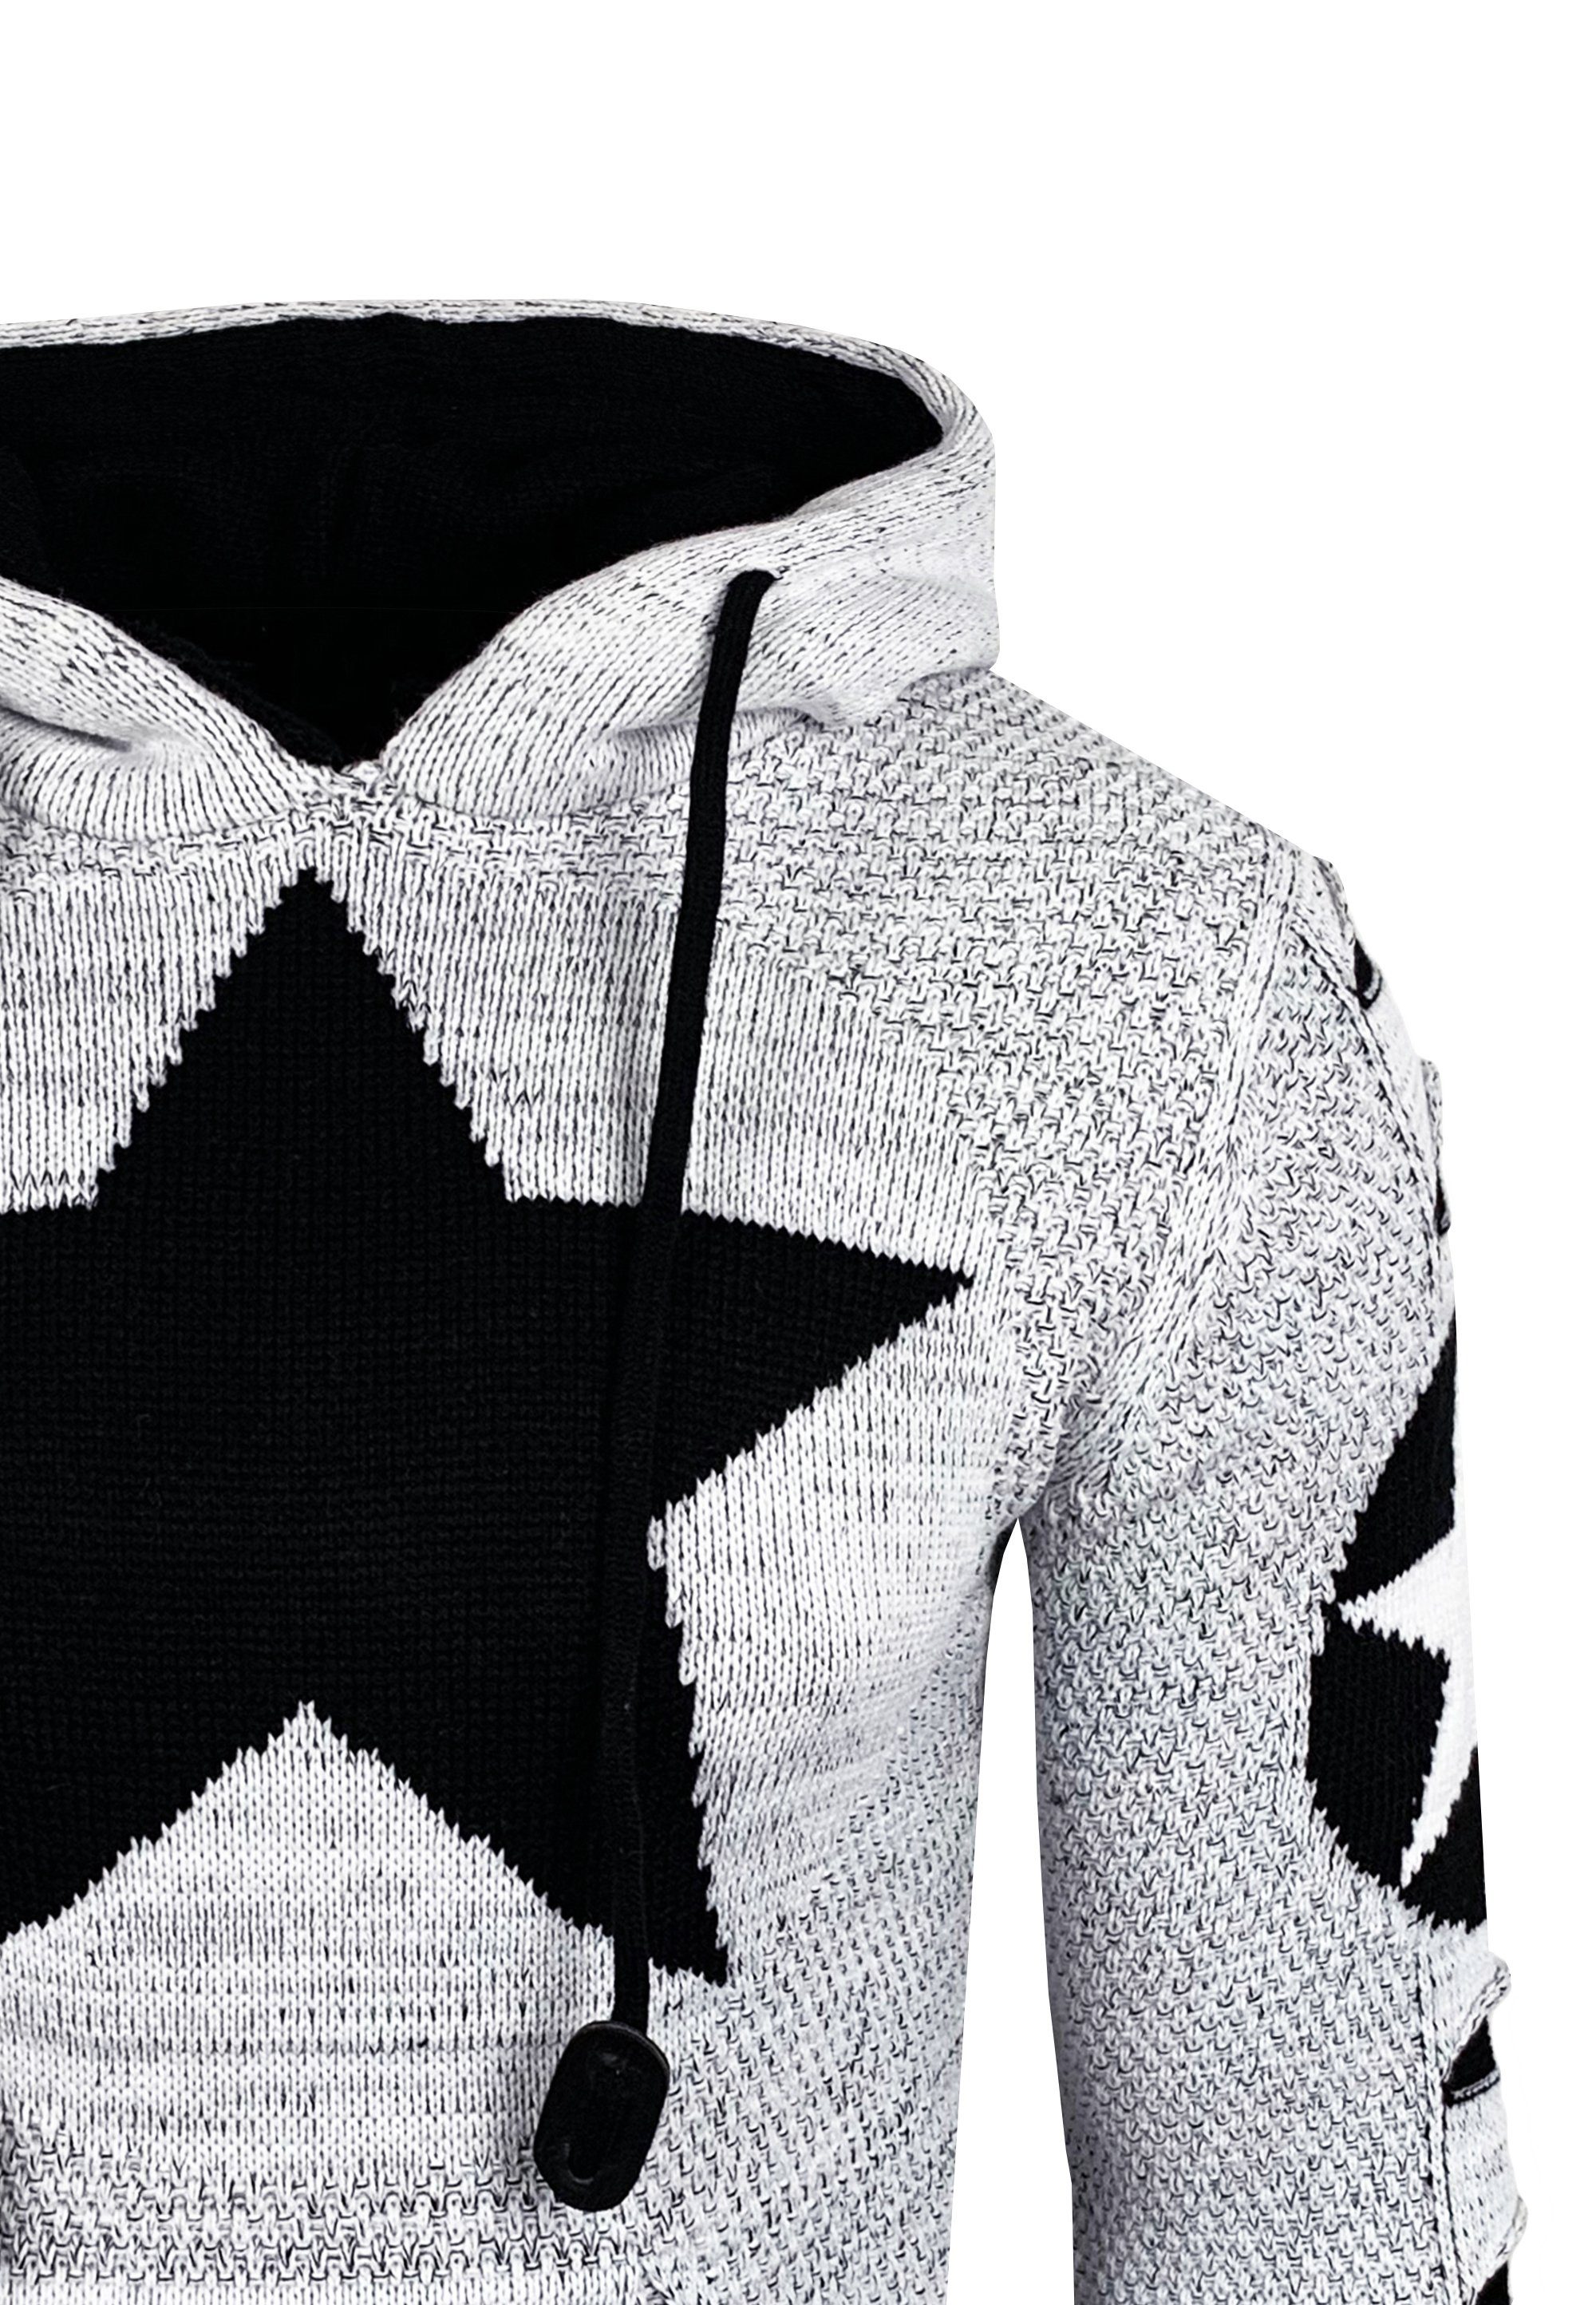 großem Rusty Kapuzensweatshirt Neal Stern-Design mit weiß-schwarz